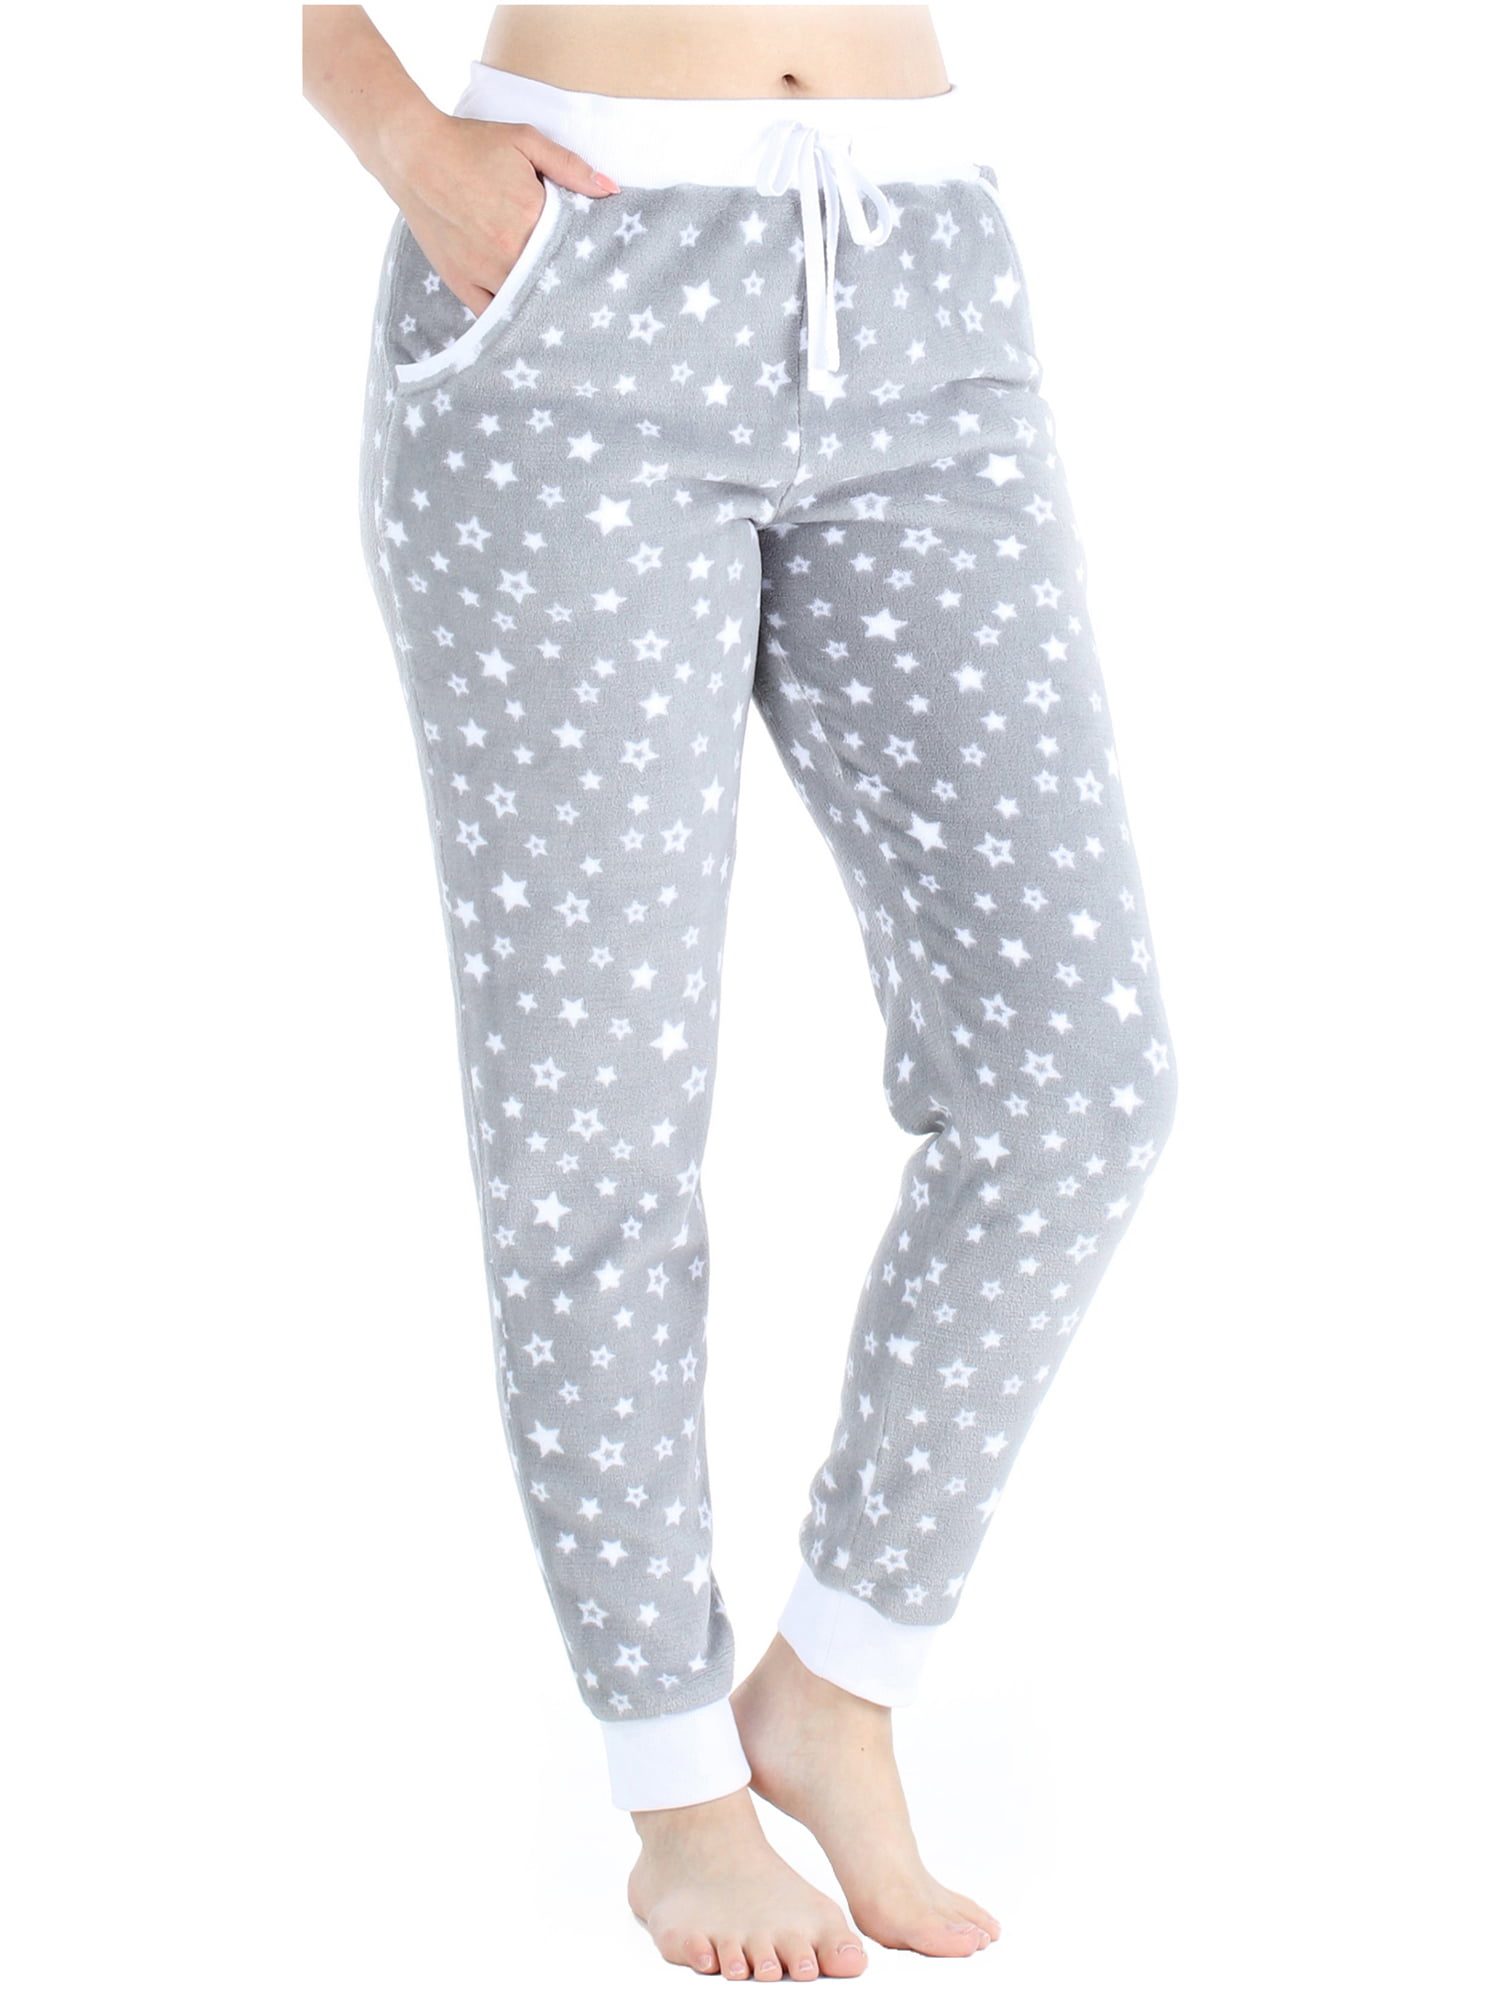 PajamaMania - PajamaMania Women's Plush Fleece Jogger Pajama Pants with ...